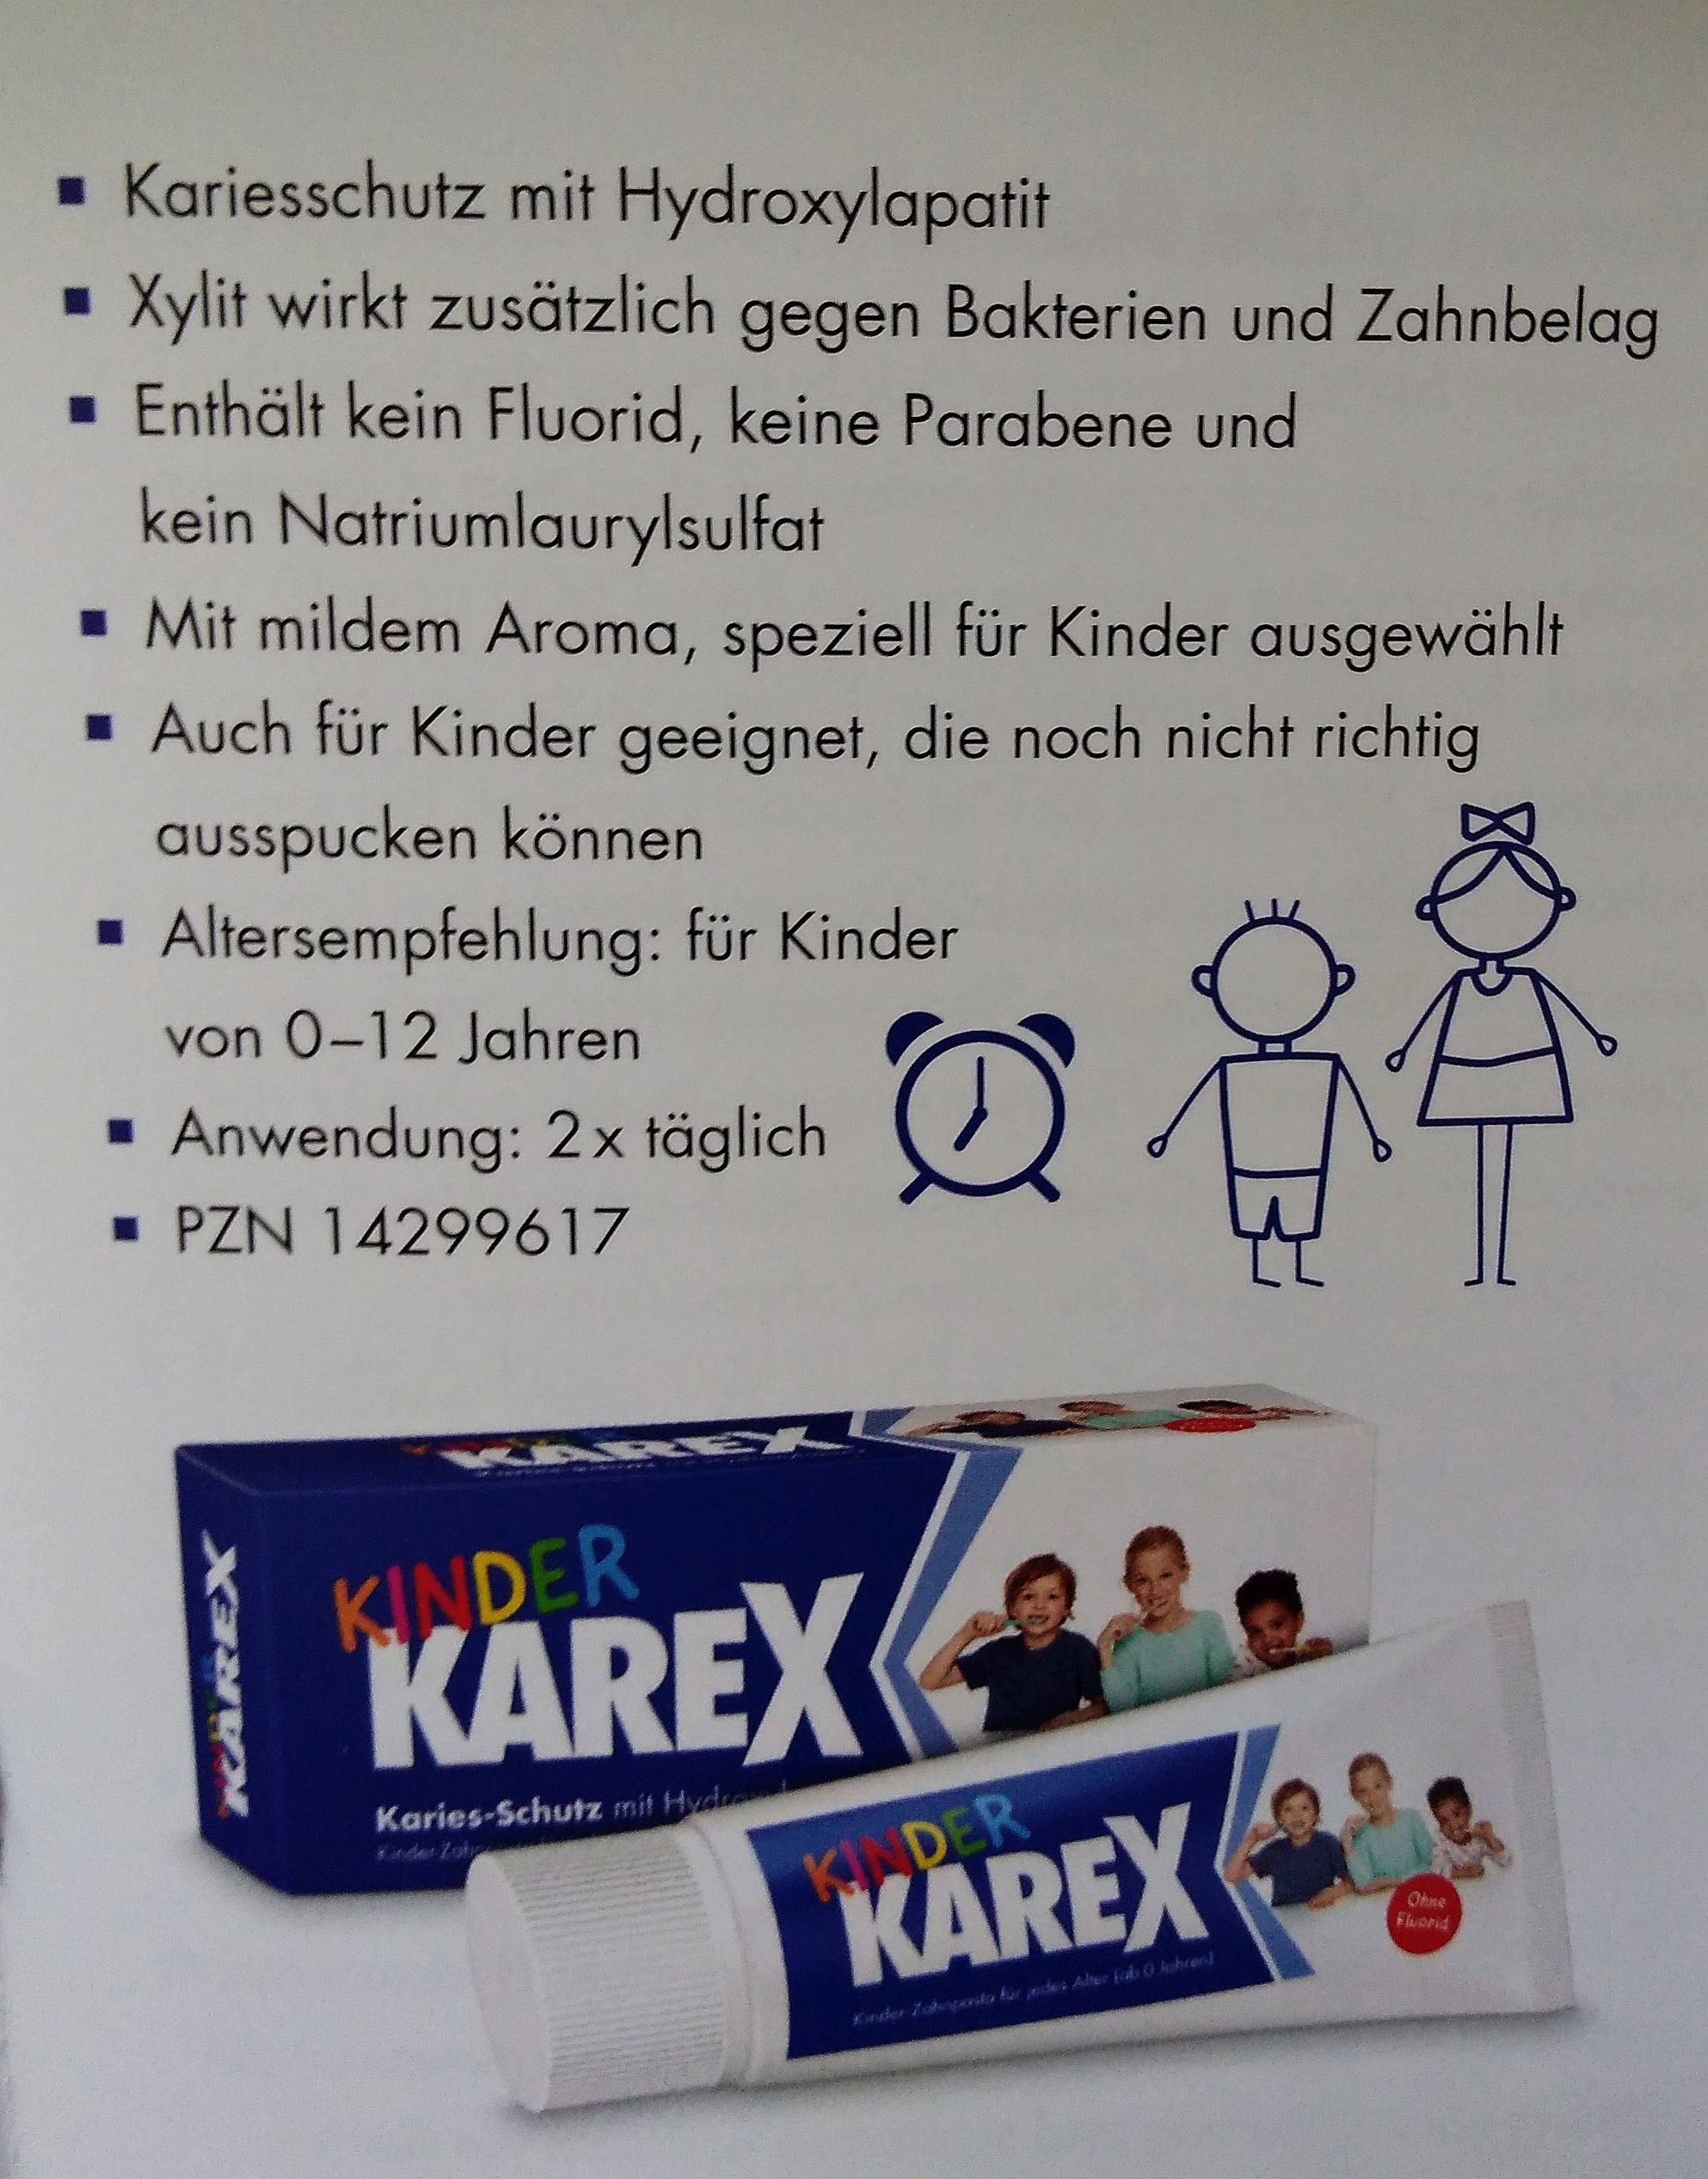 Karex_2